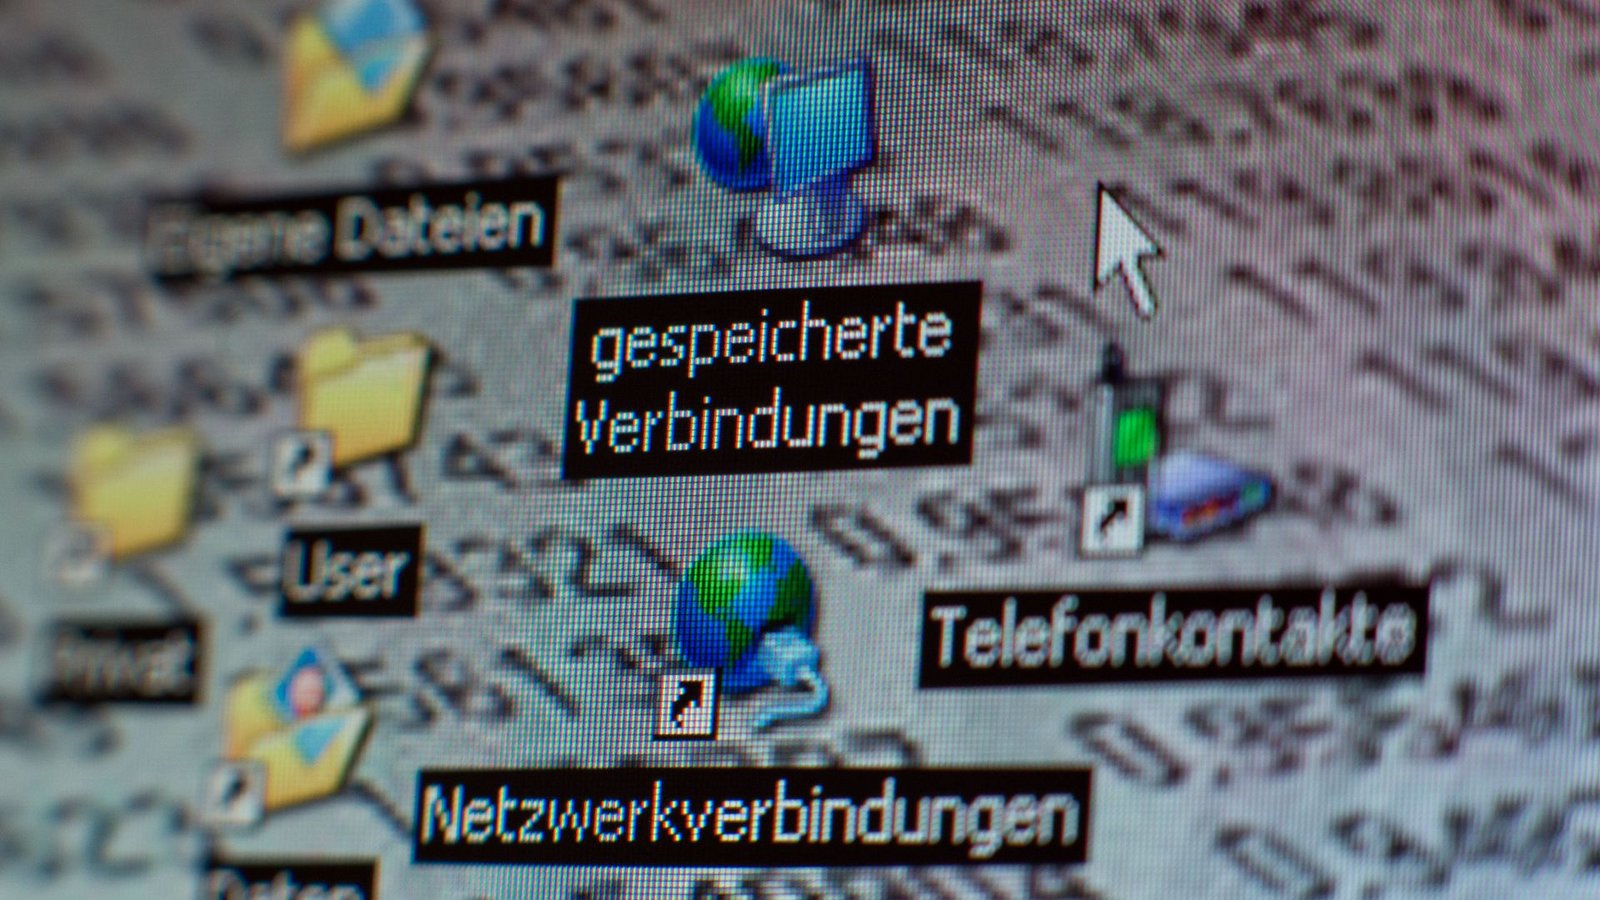 Bildschirmsymbole mit der Bezeichnung "gespeicherte Verbindungen" sind auf einem Computermonitor zu sehen (gestelltes Foto). )Foto: Jens Büttner/dpa-Zentralbild/dpa